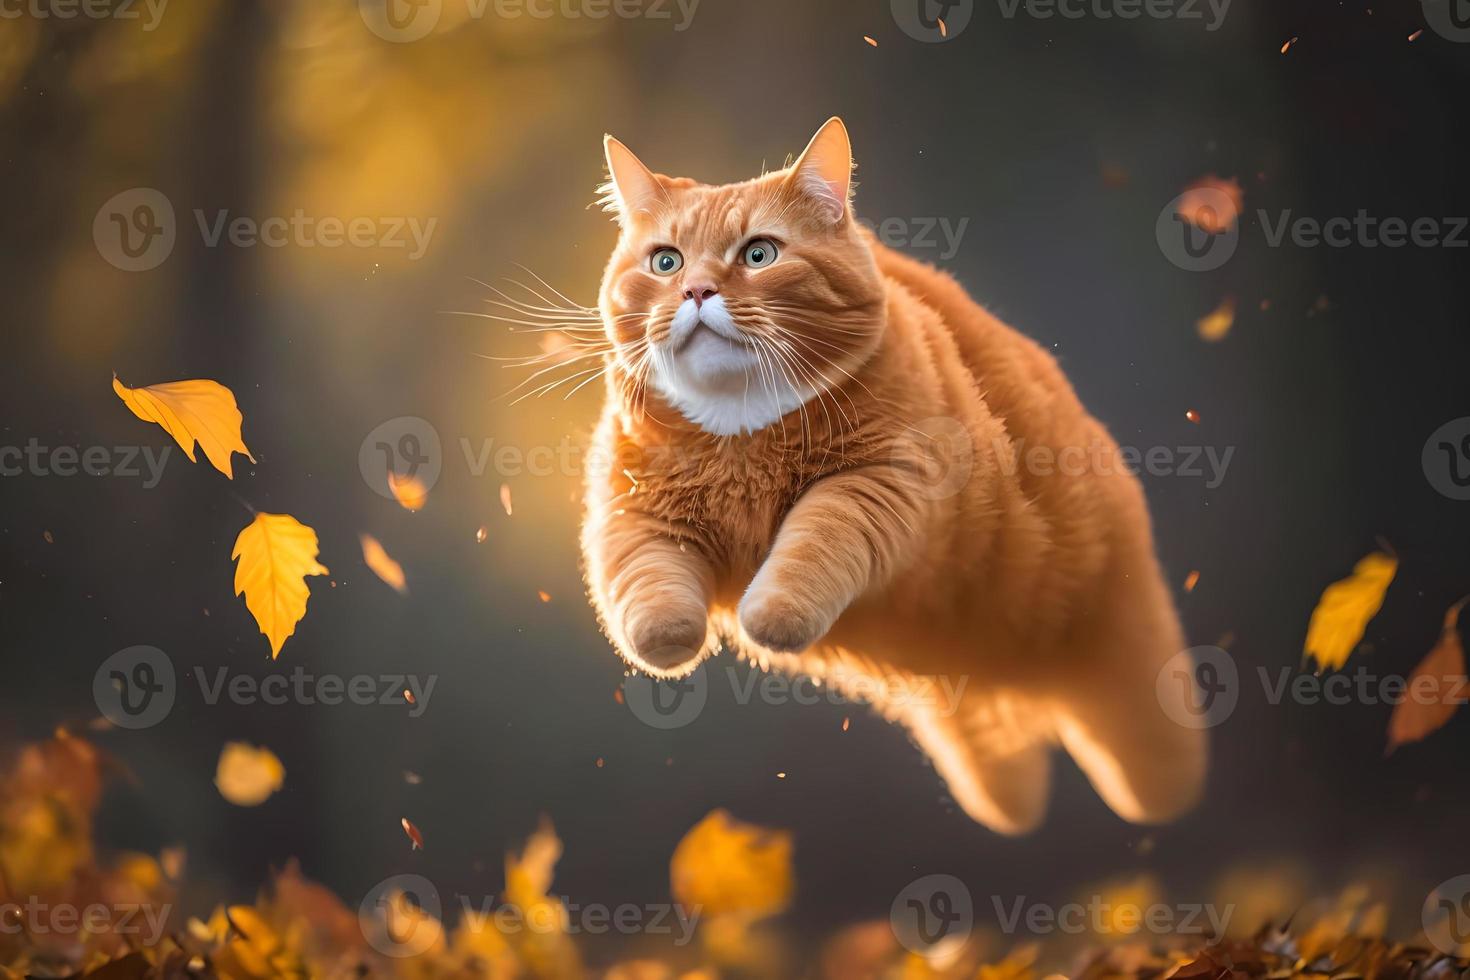 retrato gracioso rojo gato volador en el aire en otoño fotografía foto